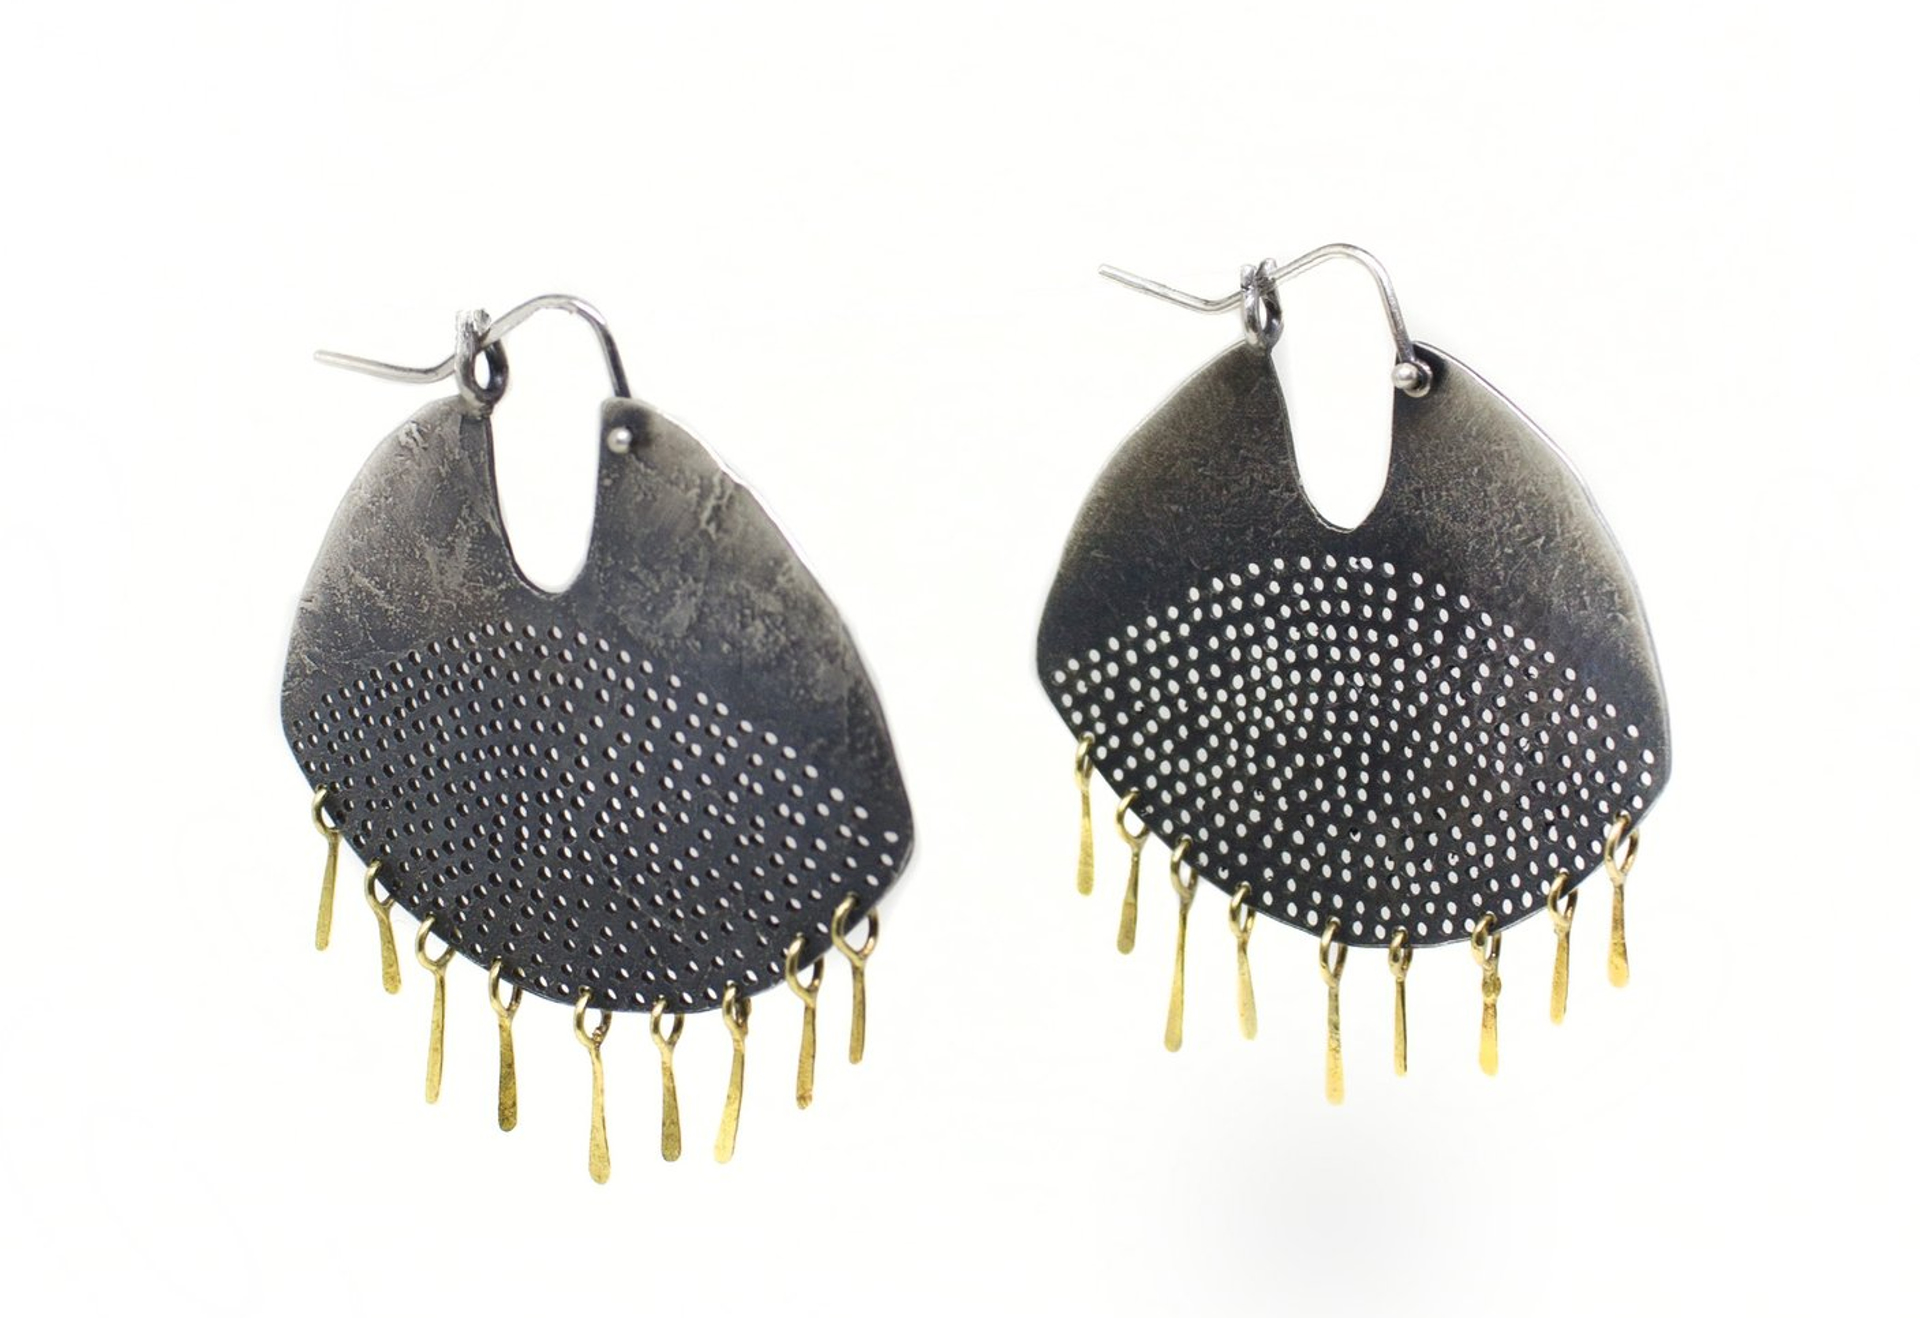 Gibbous Fringe Earrings by Leia Zumbro